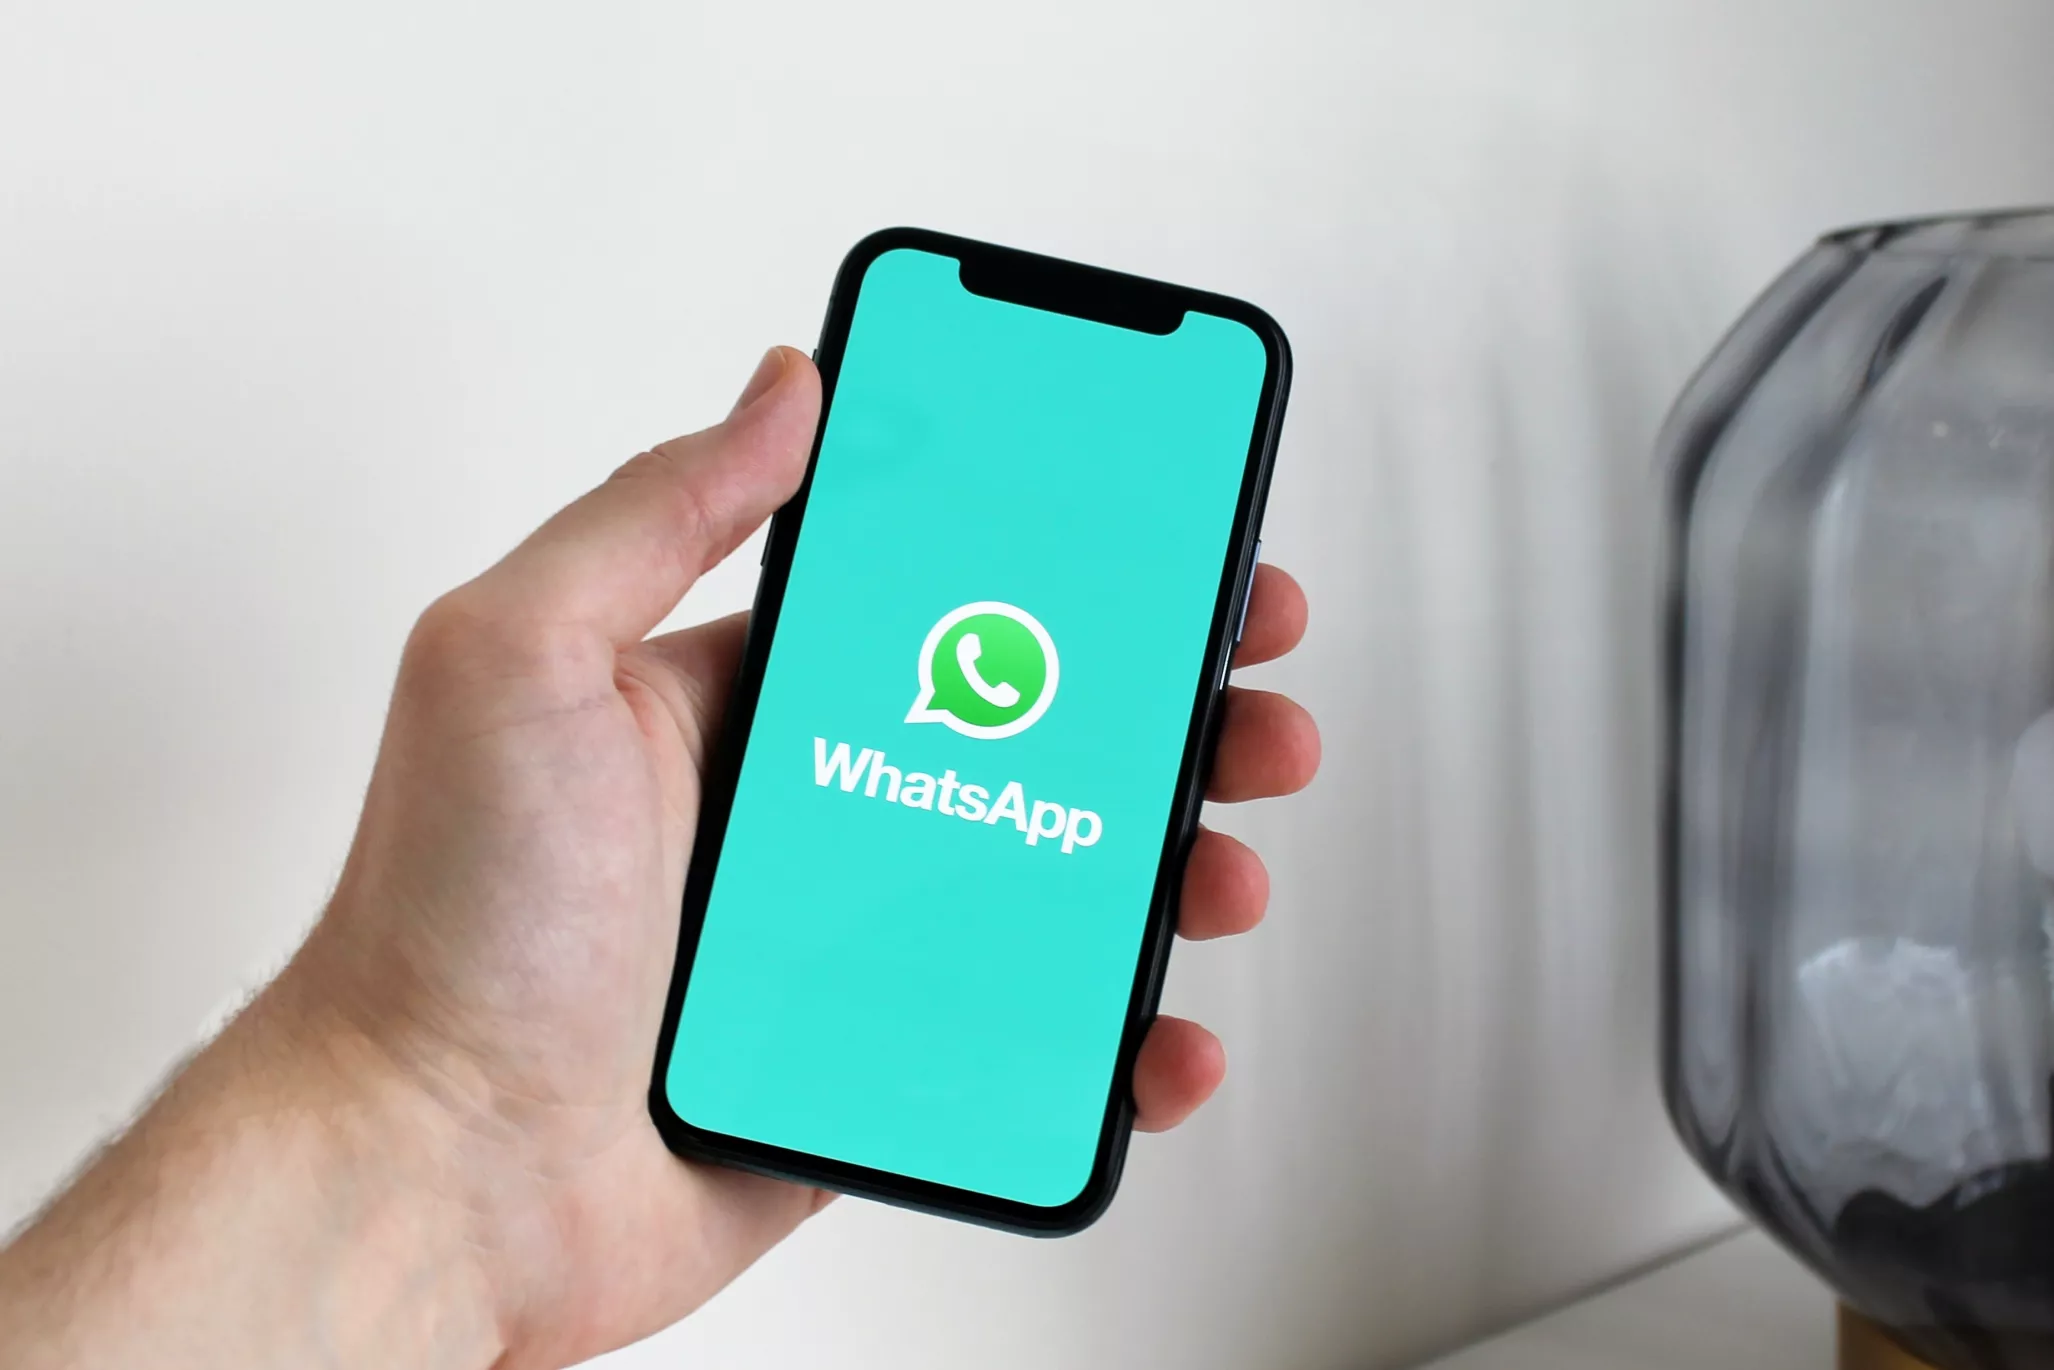 WhatsApp зобов’язався чесно інформувати користувачів про оновлення